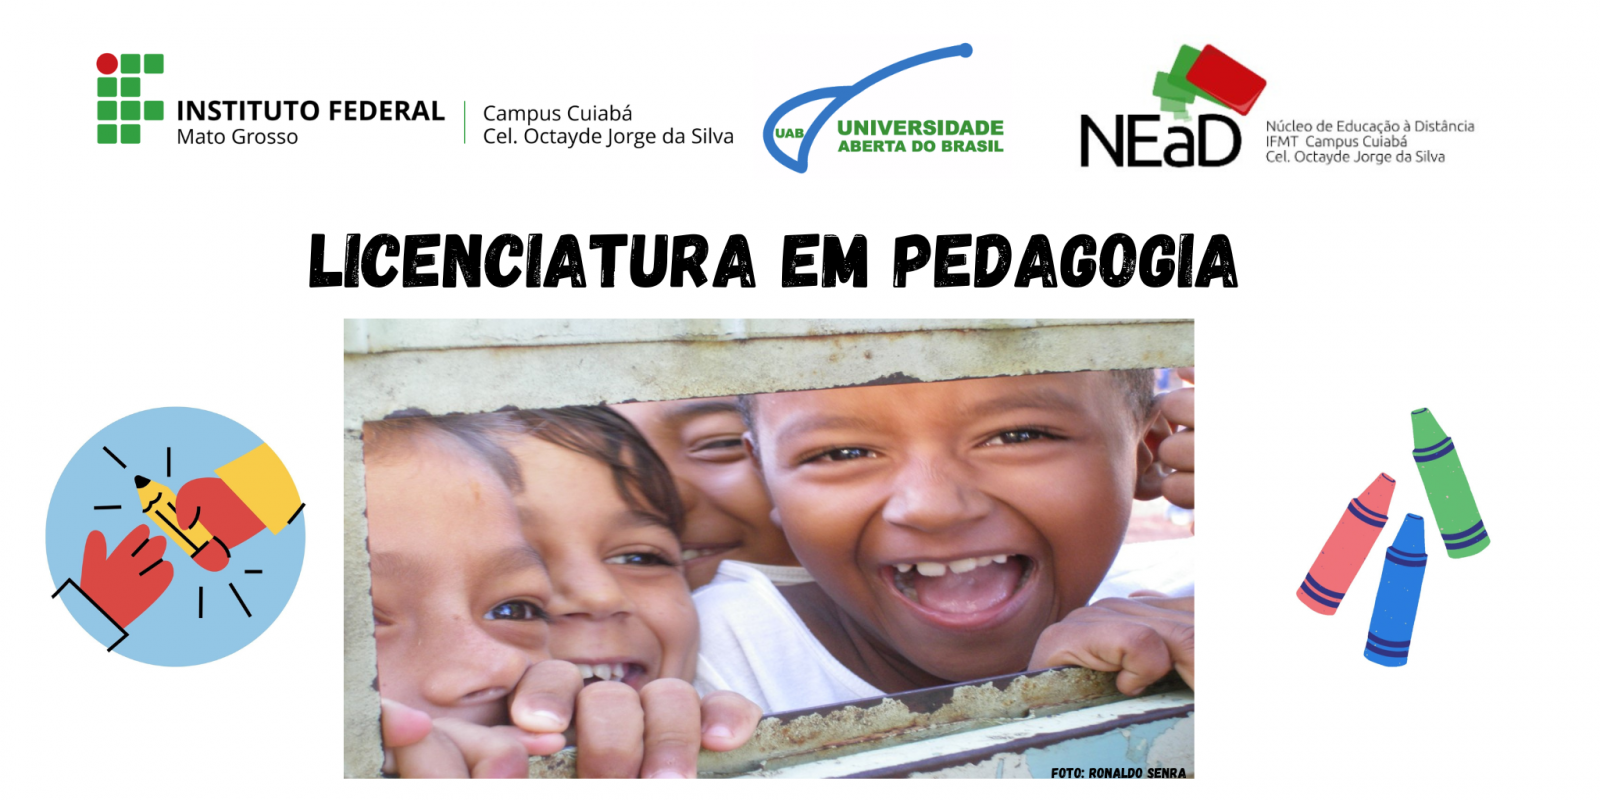 II Seminário Integrador do Curso de Pedagogia da UAB/NEAD/IFMT - Campus Cuiabá